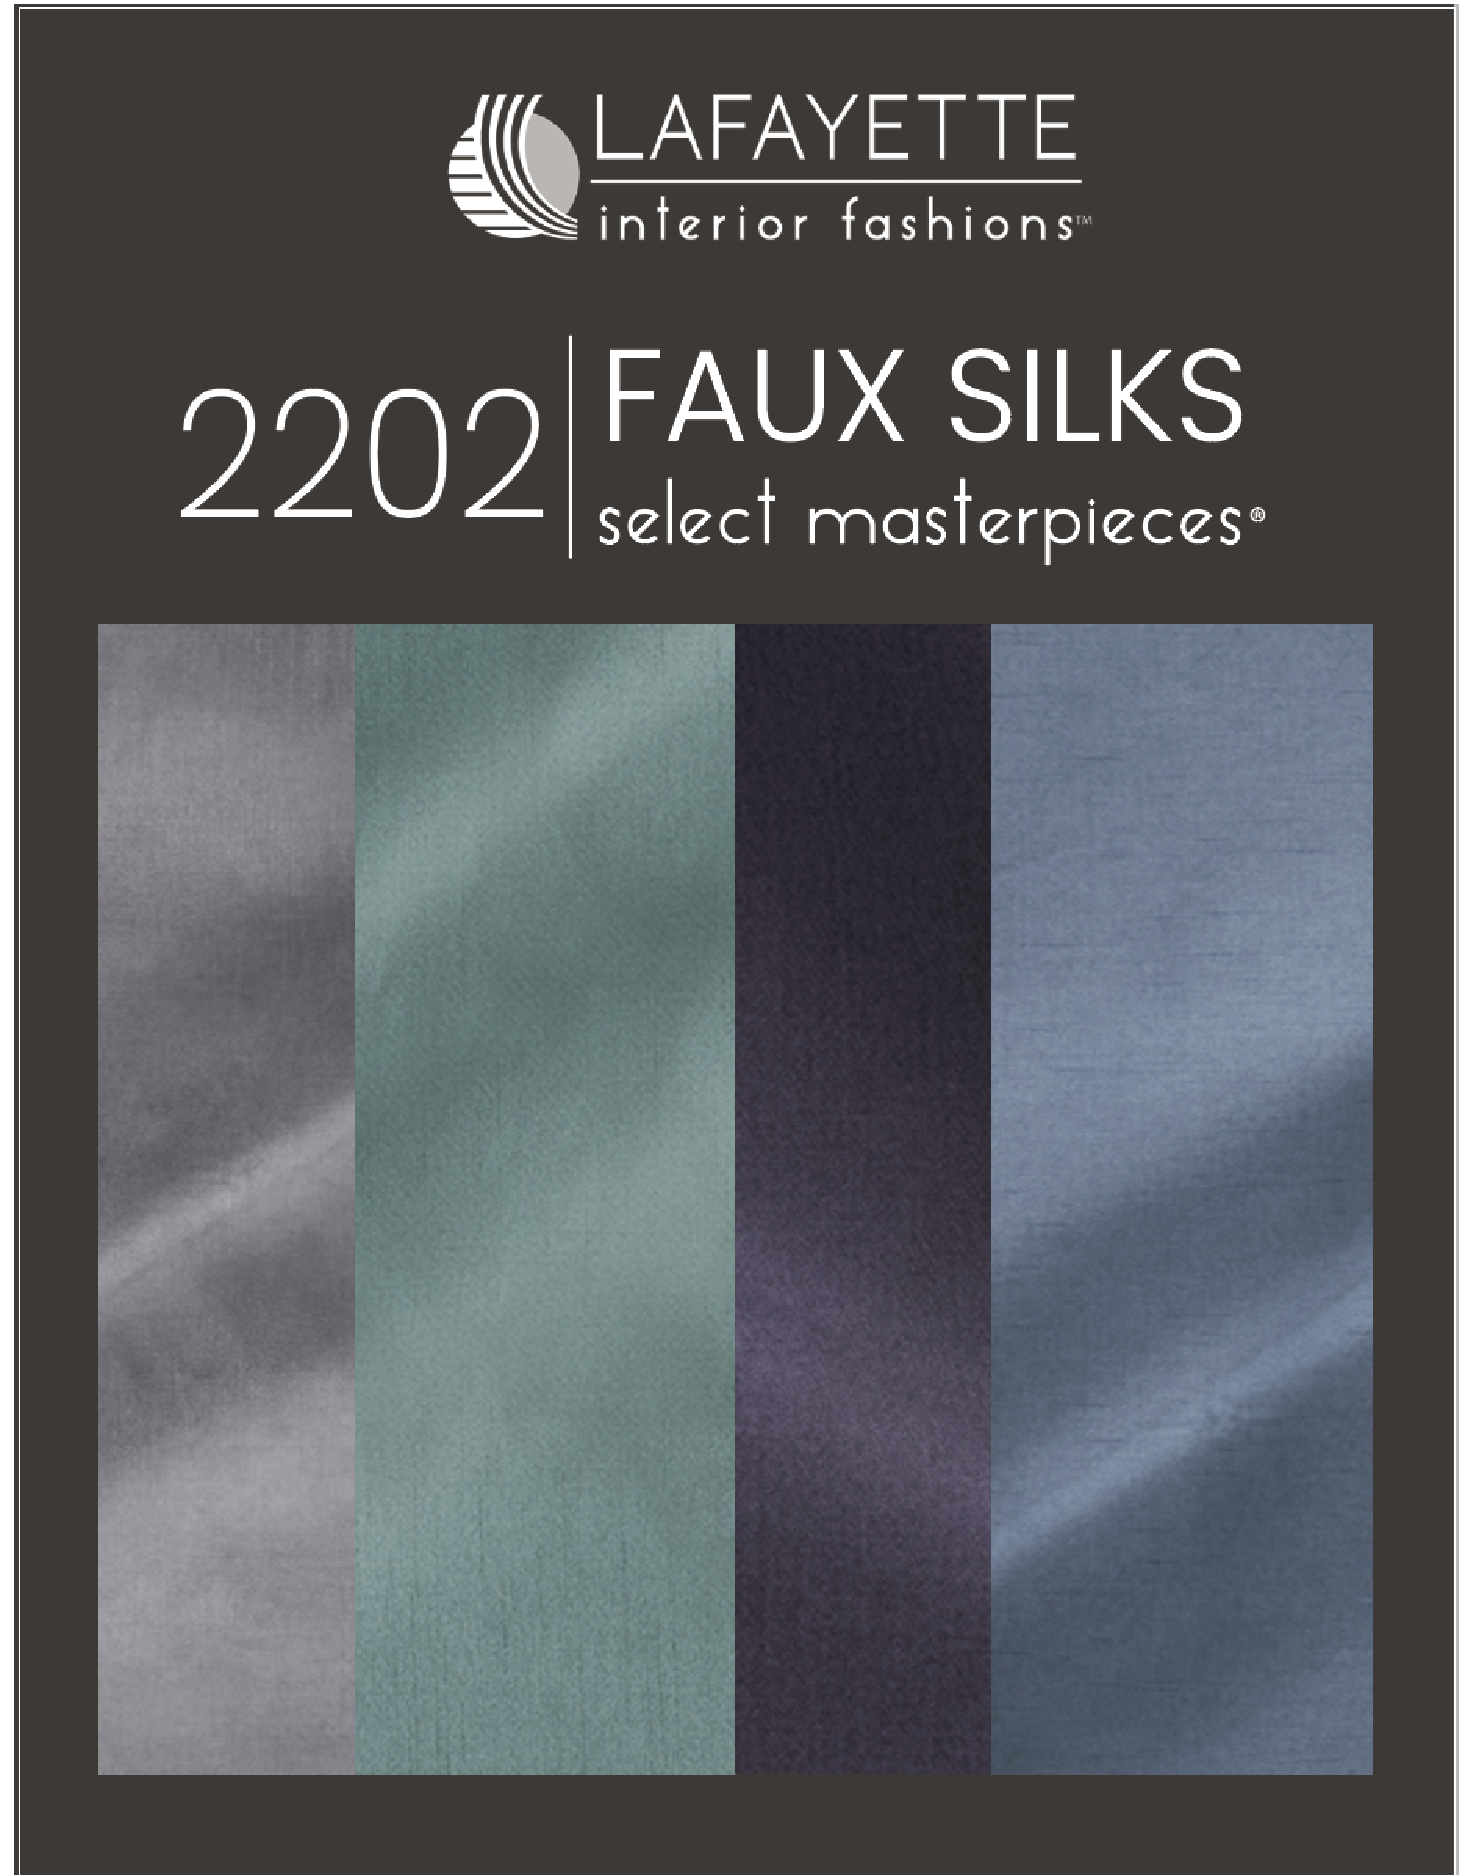 Faux Silks 2202